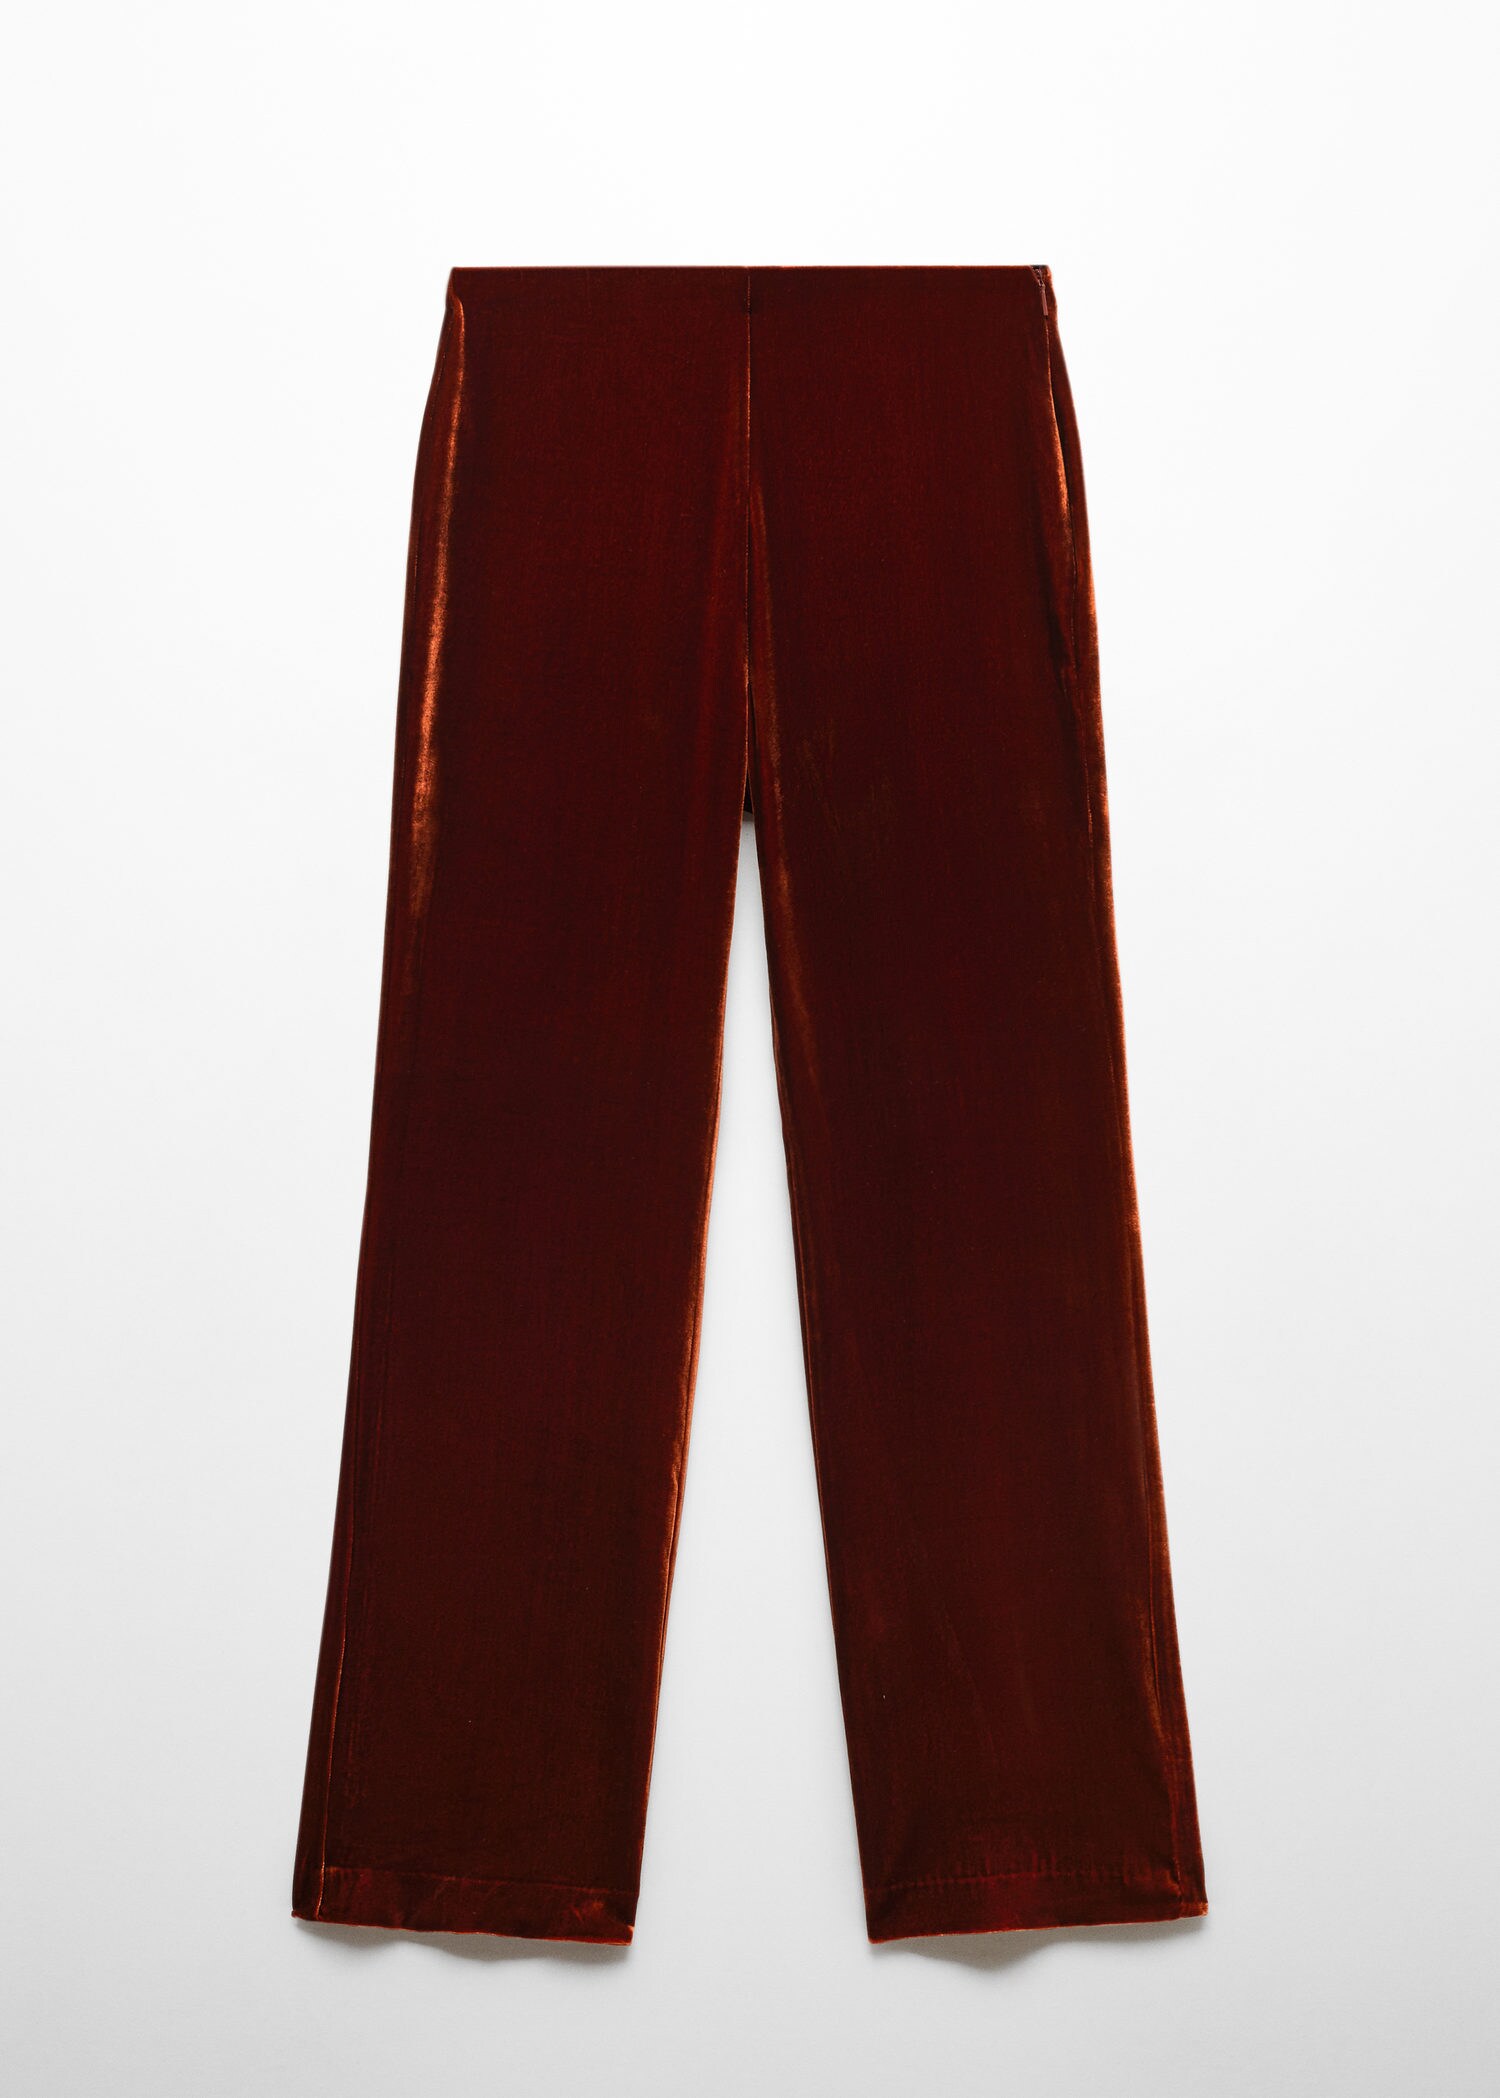 Mango velvet co-ord trousers in dark red | ASOS